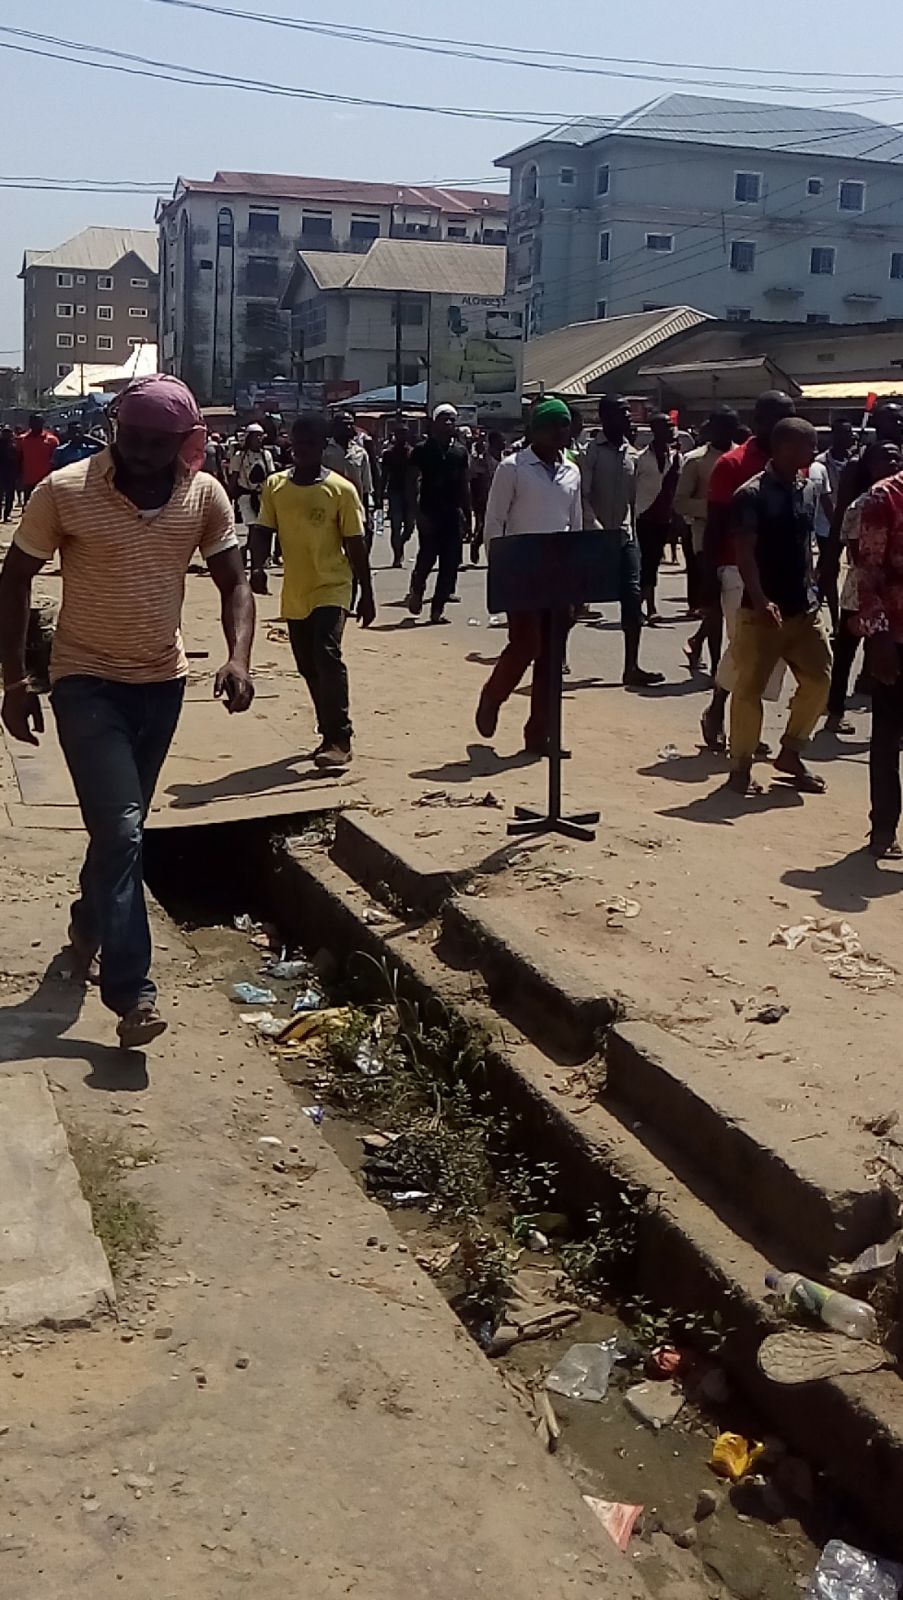 Un groupe de jeunes manifestants se rassemble dans les rues du Nigeria pour protester contre la corruption et la discrimination liée à l'âge. Ils tiennent des pancartes et des banderoles demandant justice et changement. L'atmosphère est empreinte d'énergie et d'espoir.